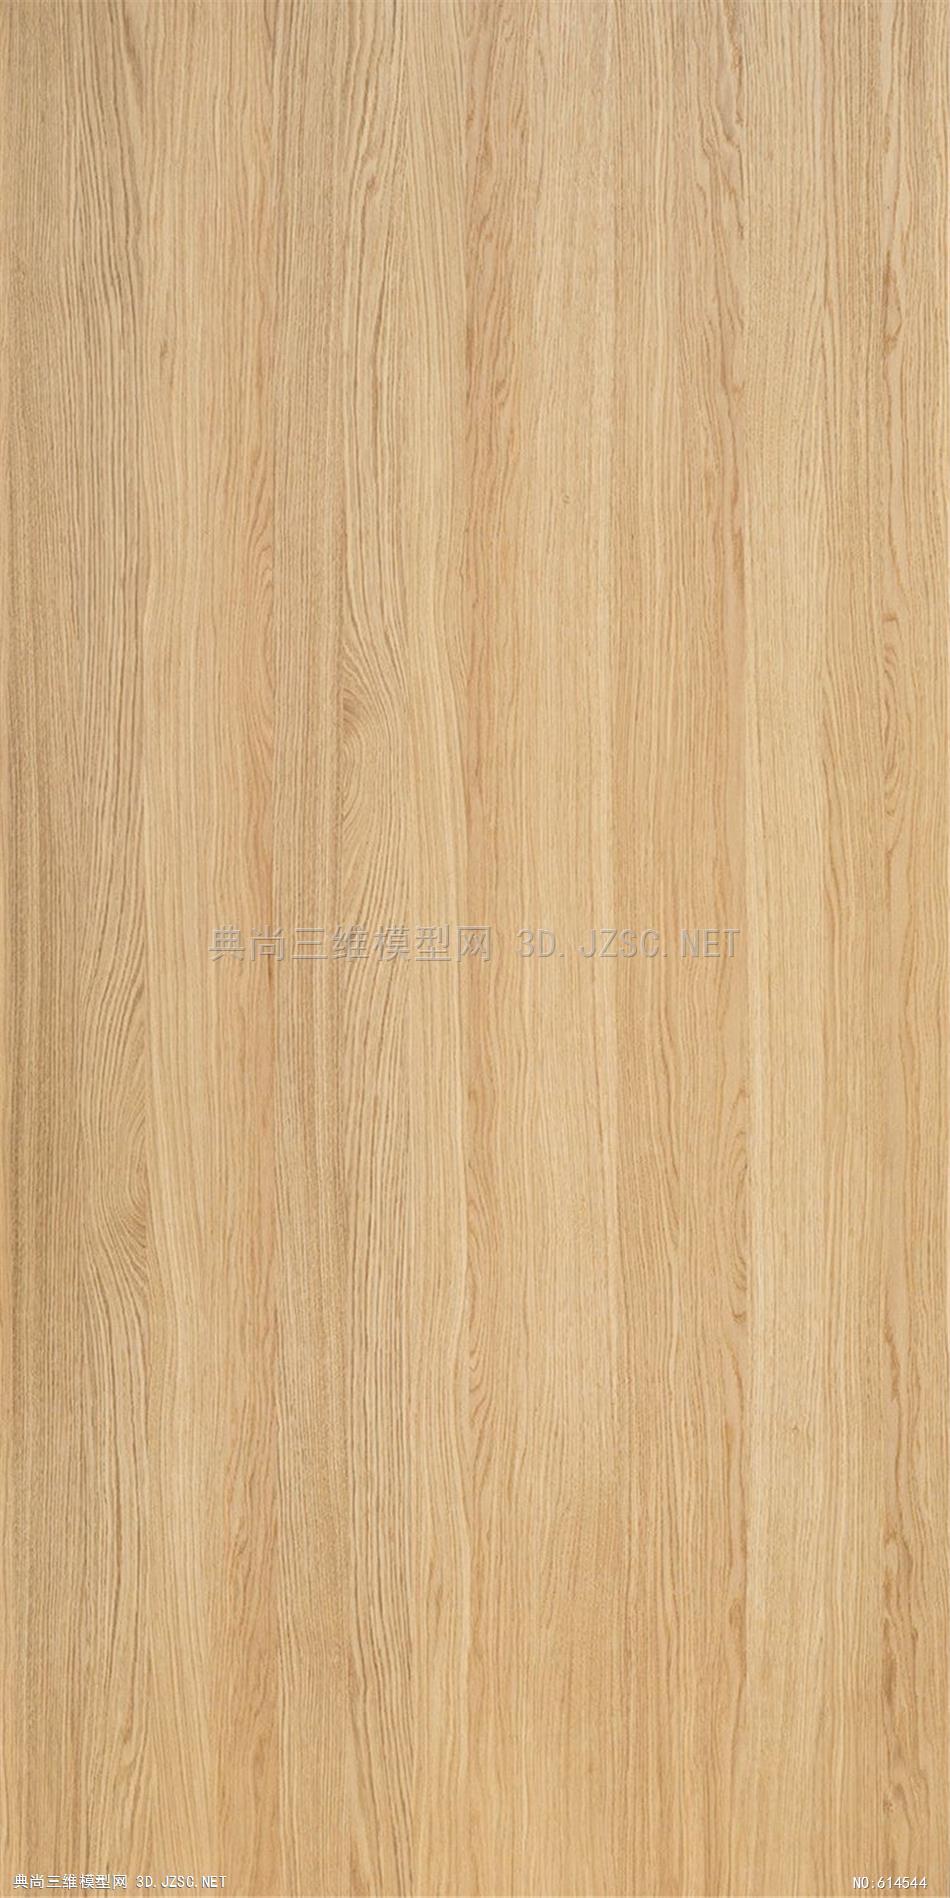 木饰面 木纹 木材  高清材质贴图 (337)